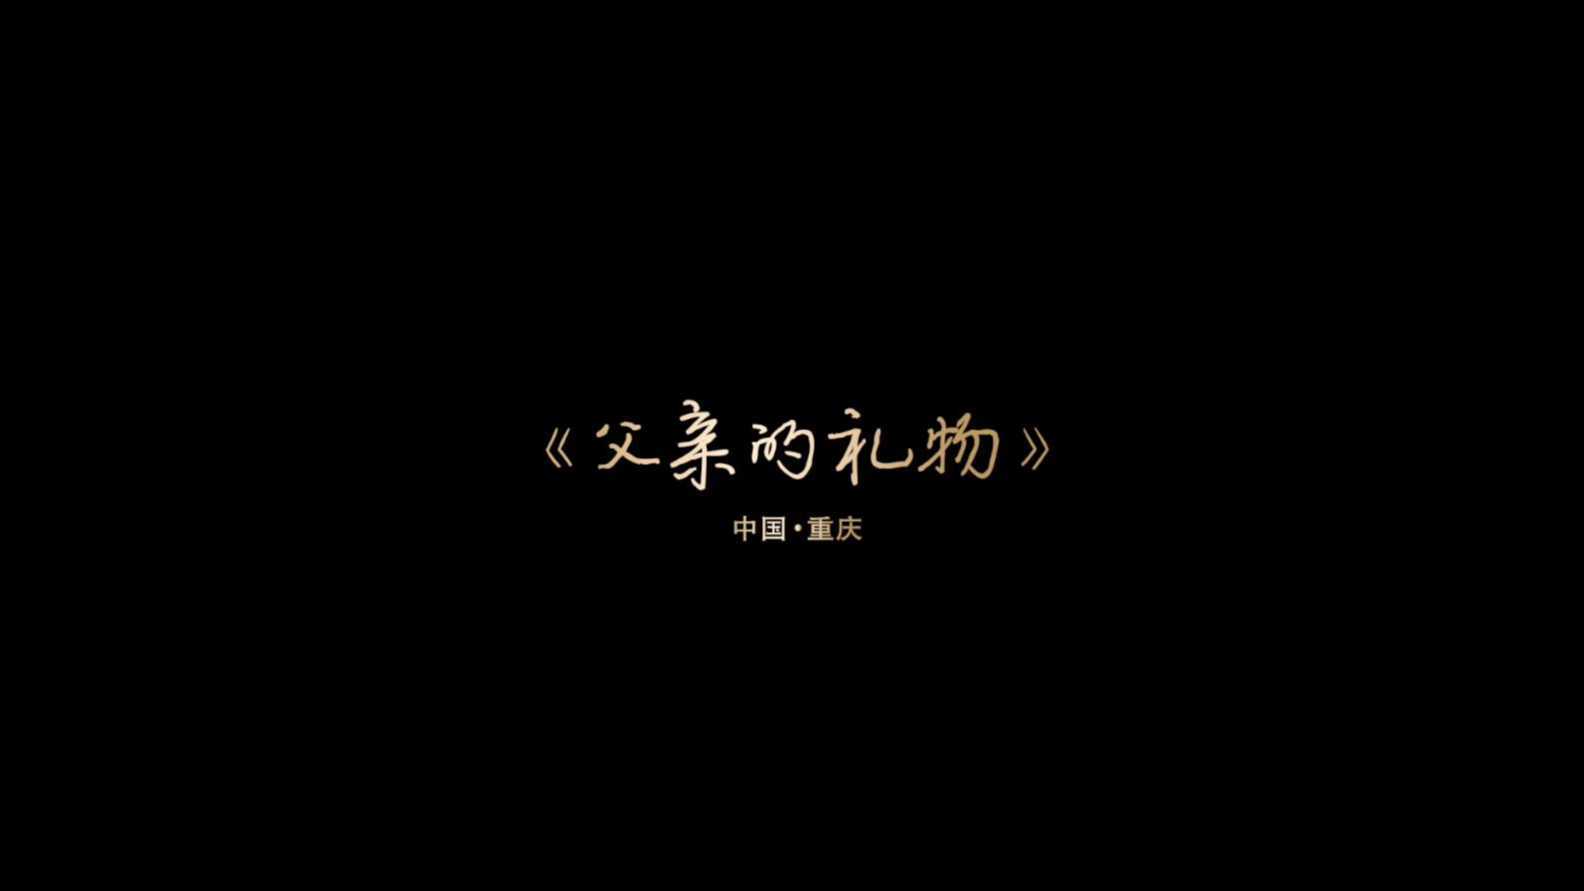 五粮液微电影《父亲的礼物》-重庆篇-导演王航